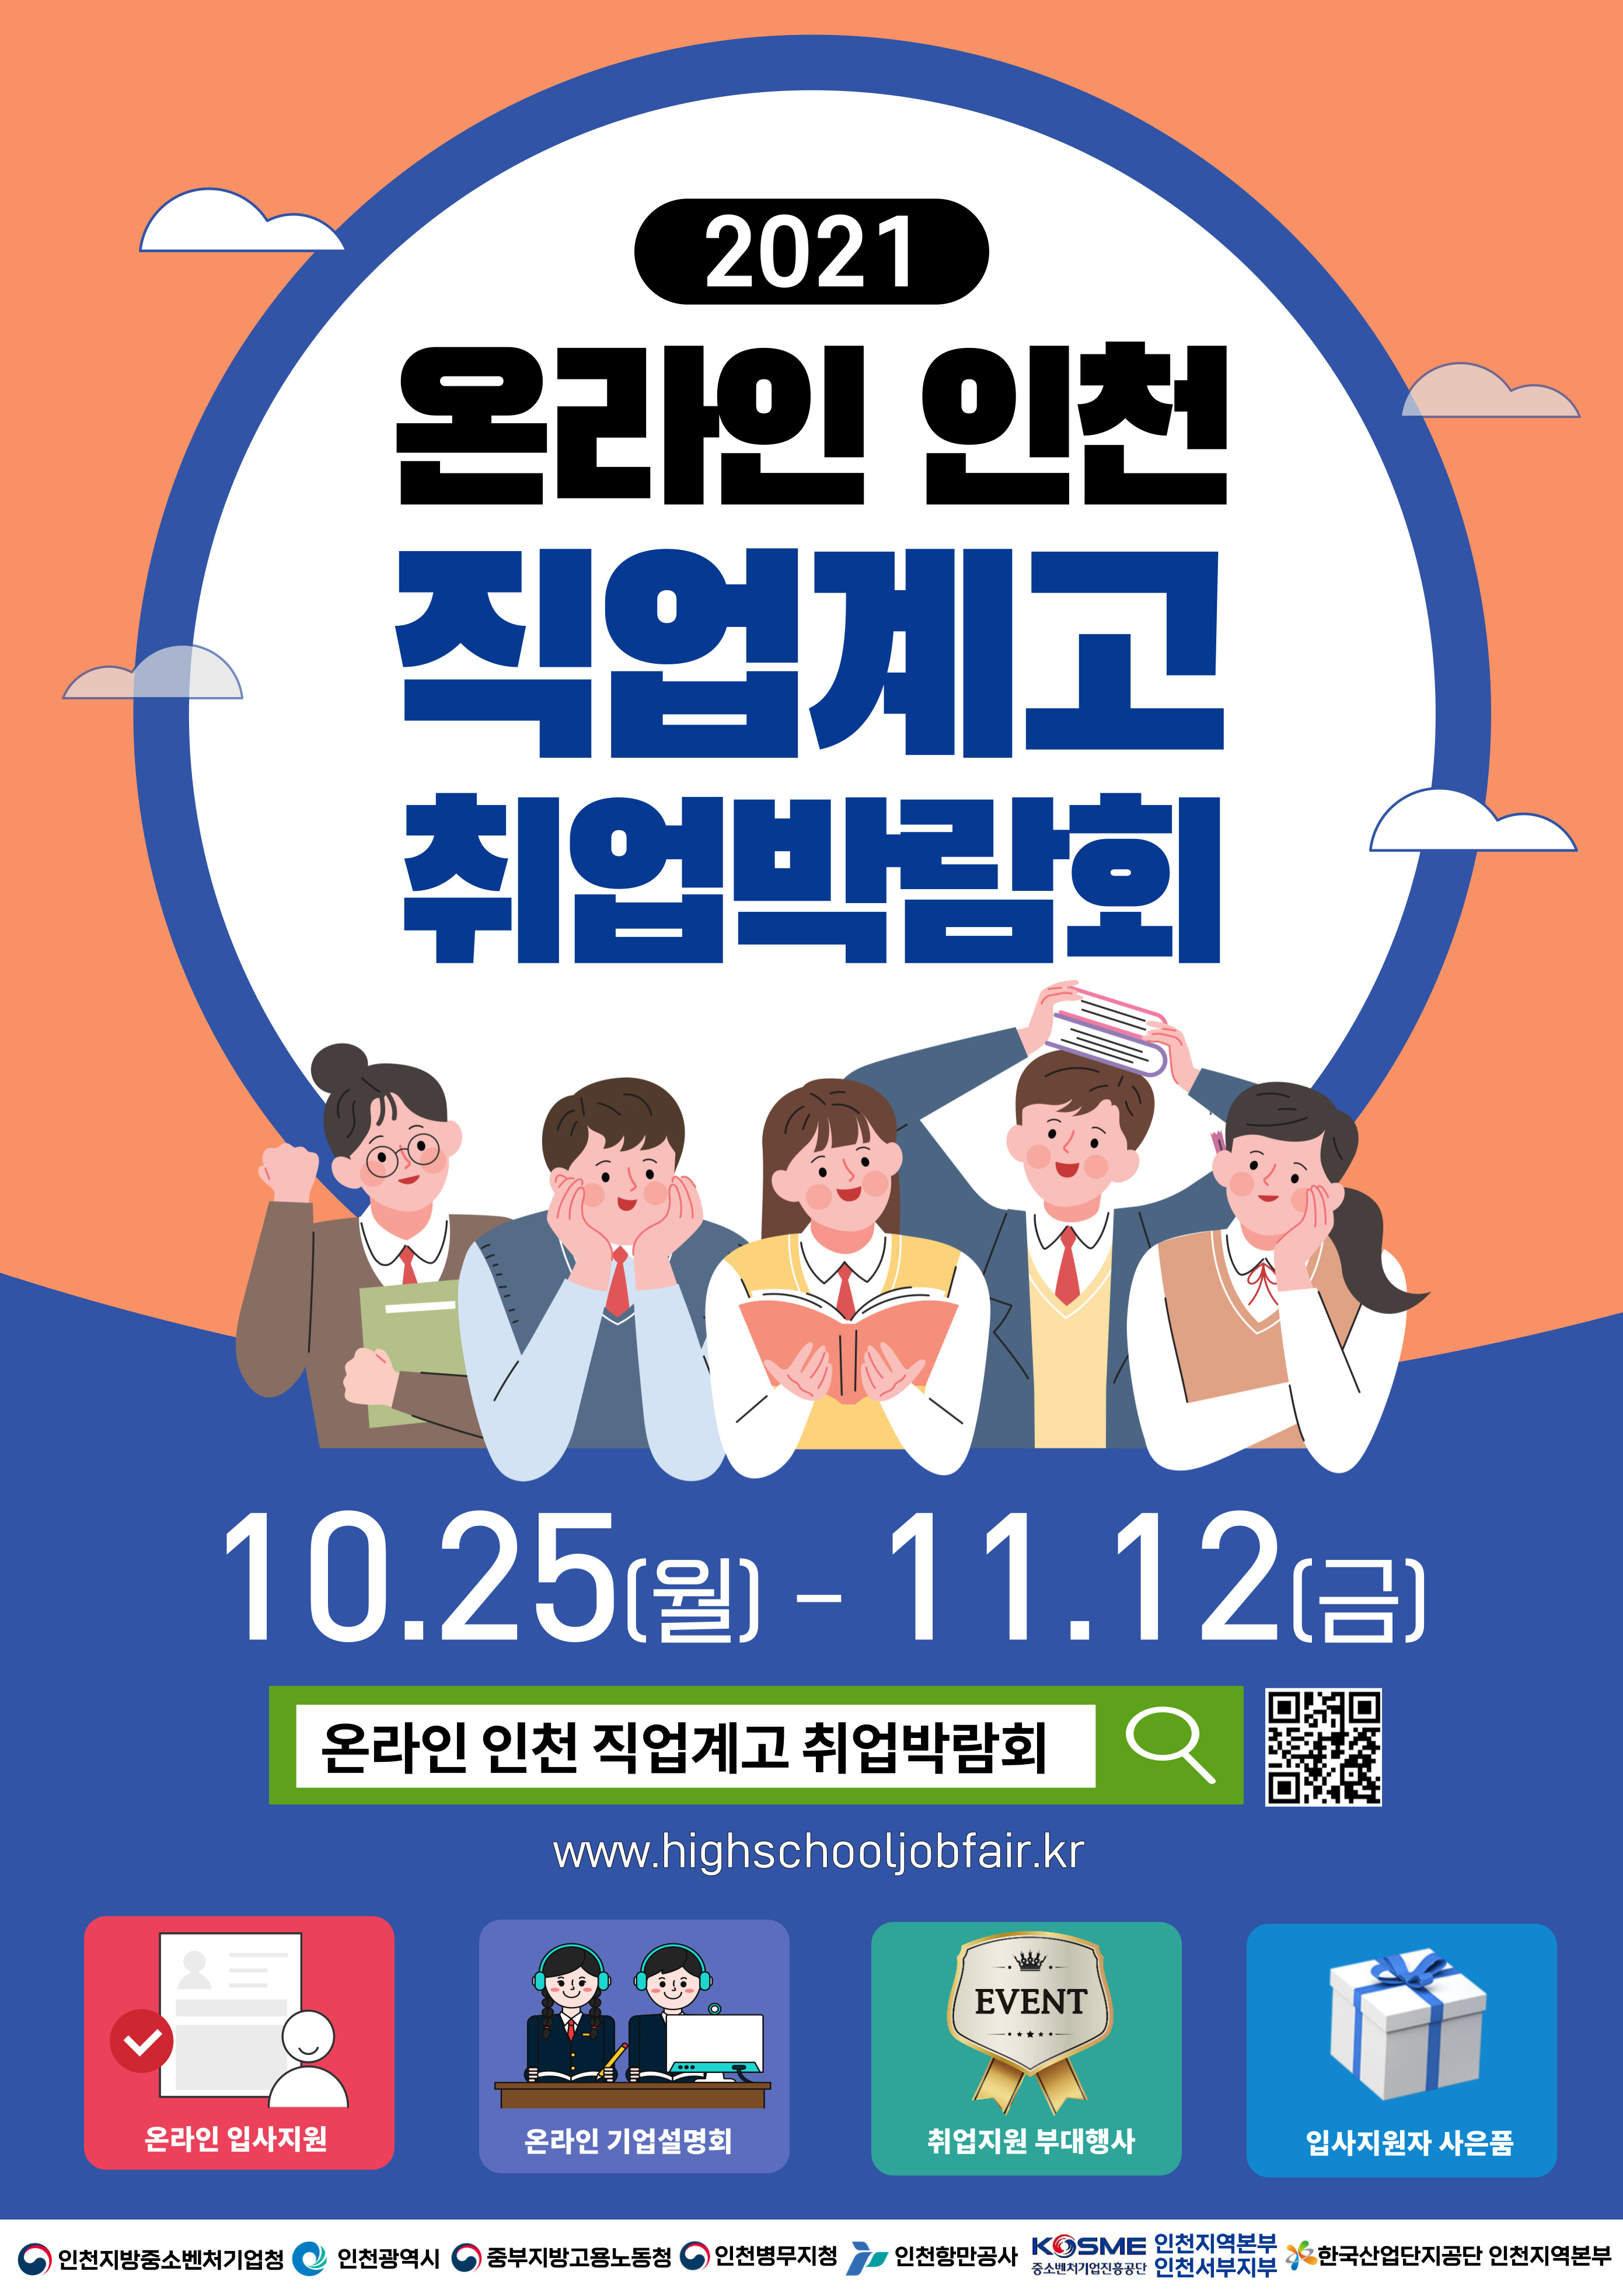 온라인 인천 직업계고 취업박람회